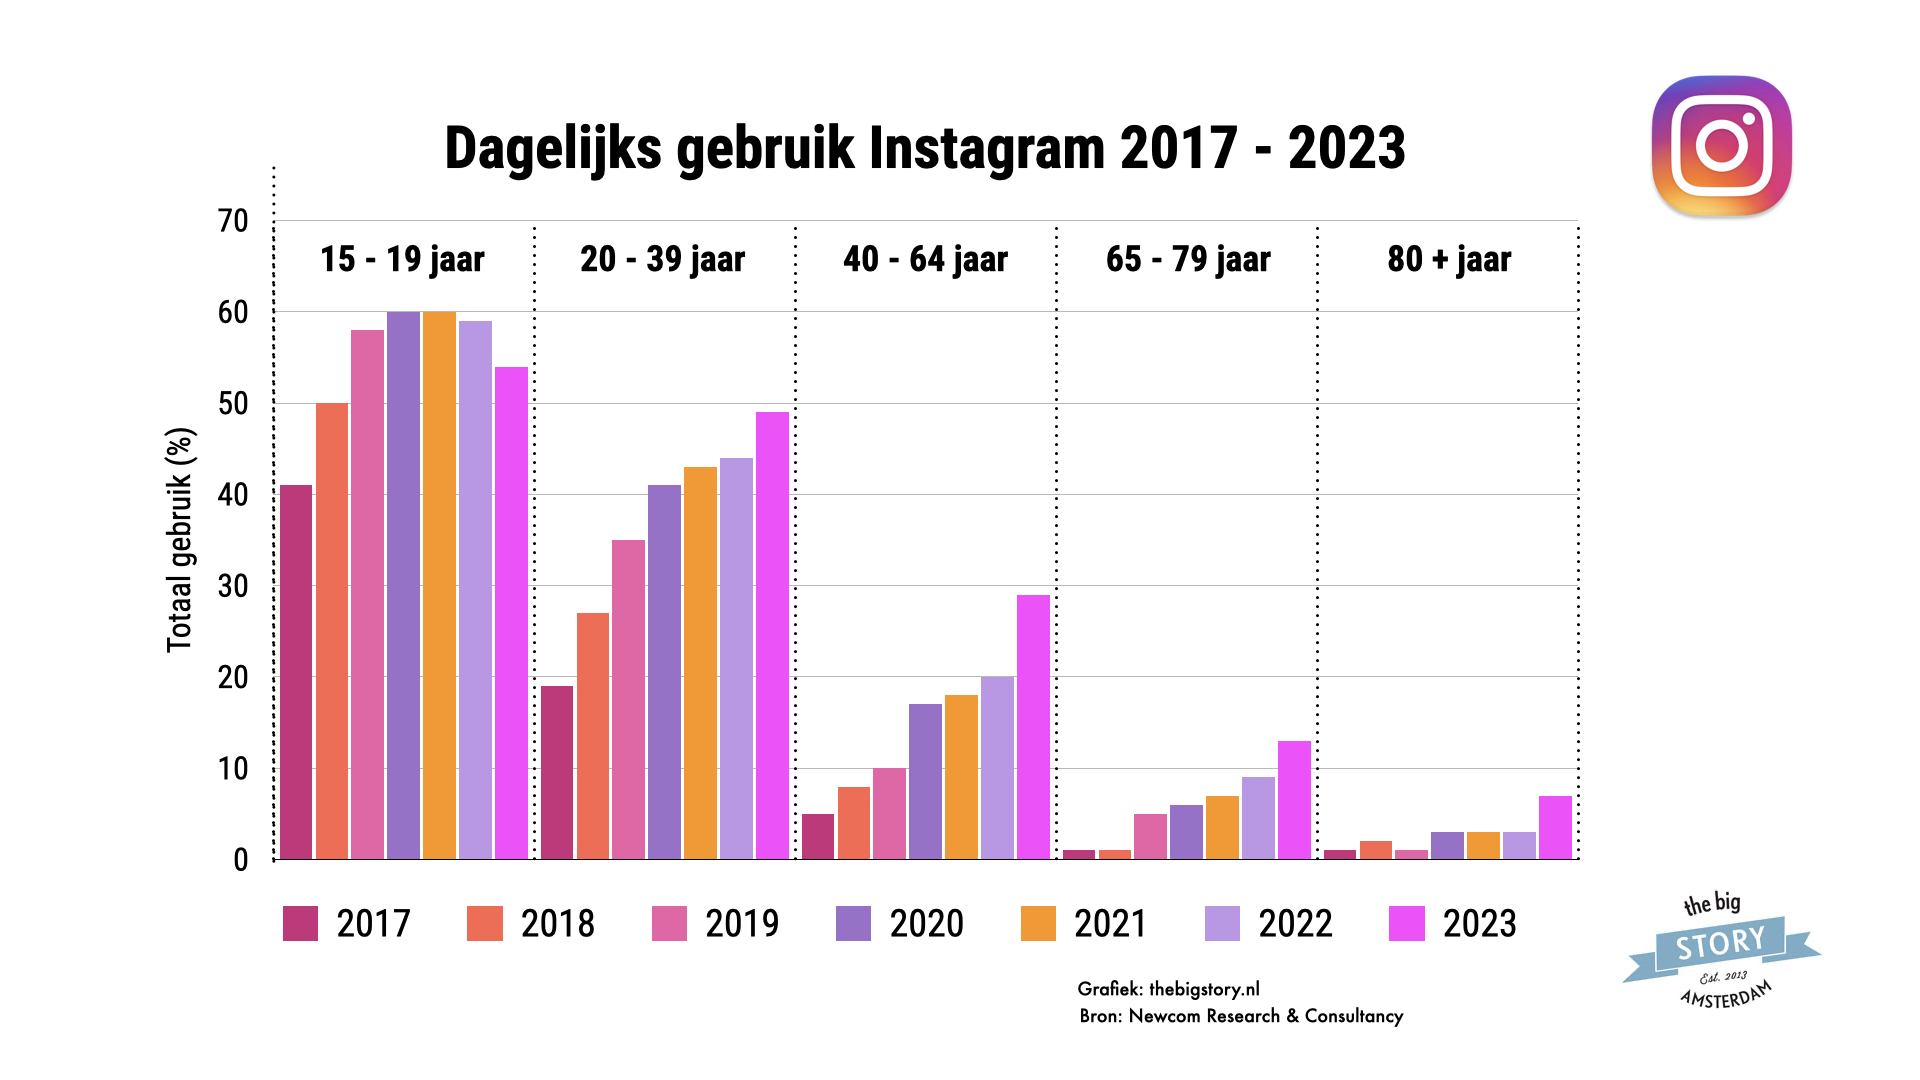 Instagram gebruik in 2023 stijgt. Vooral onder de doelgroep va 40+'ers. Onder een jonge doelgroep zie je gebruik zelfs licht dalen.